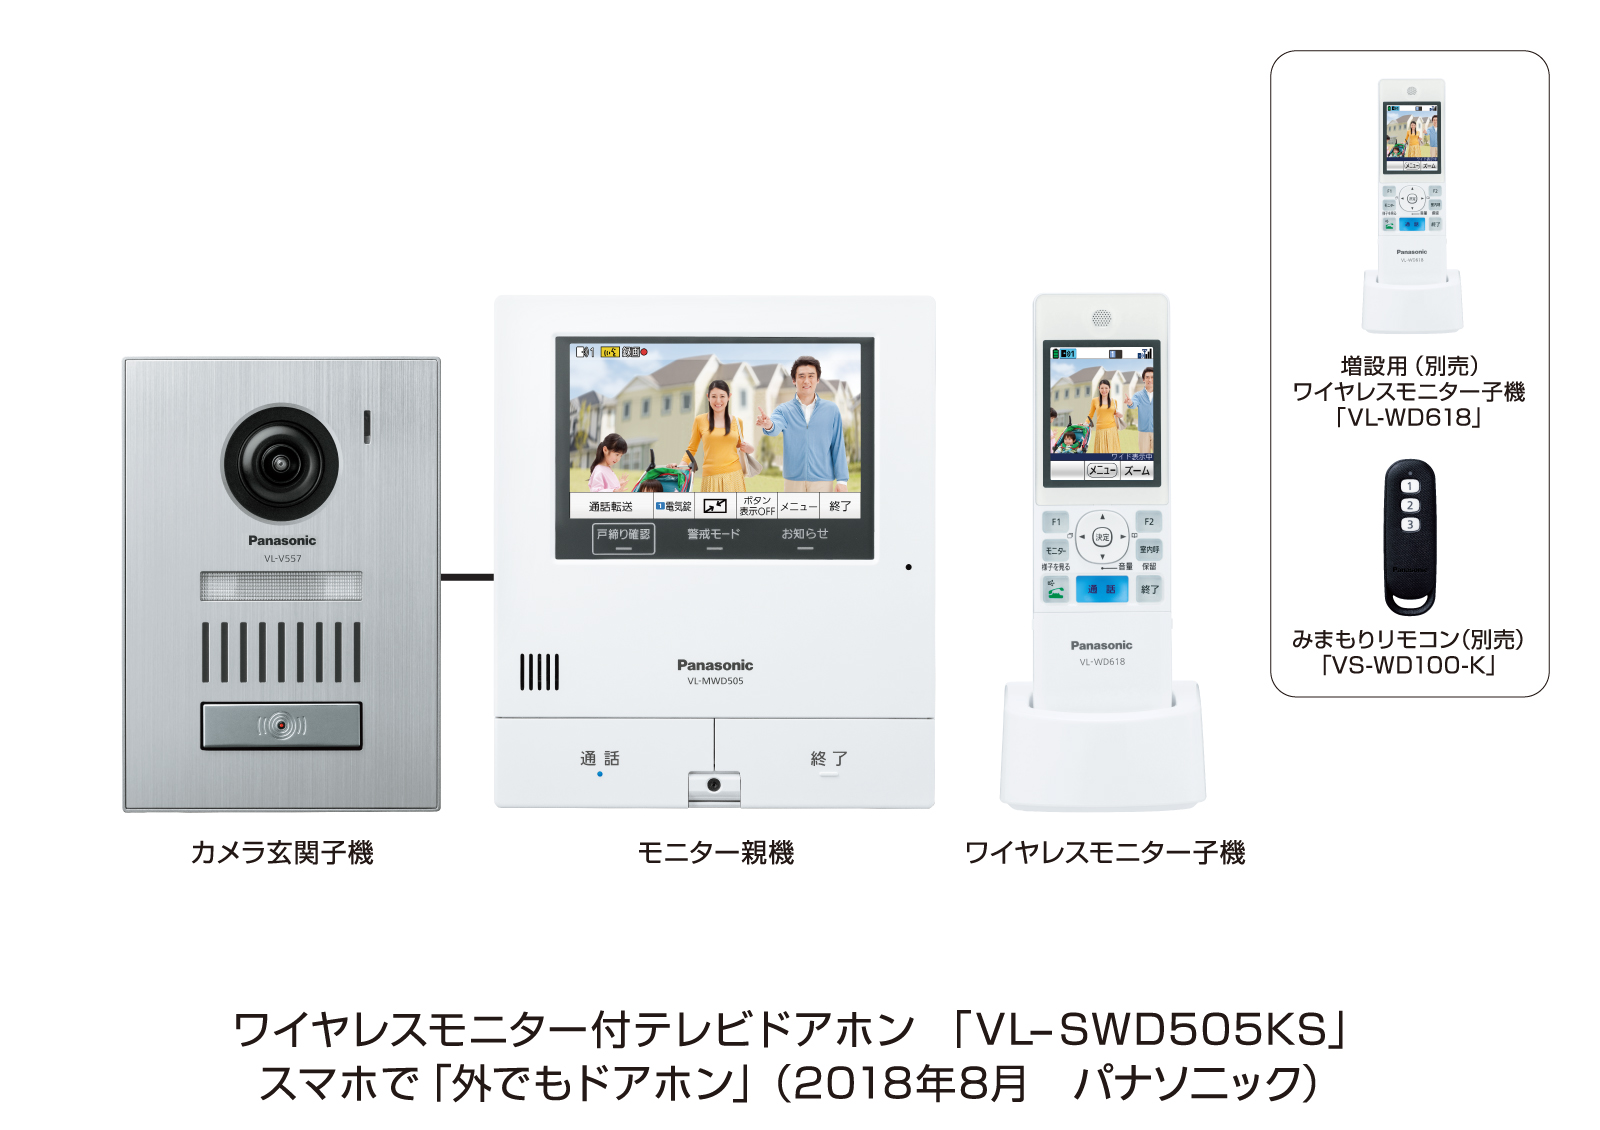 テレビドアホン「外でもドアホン」VL-SWD505シリーズを発売 